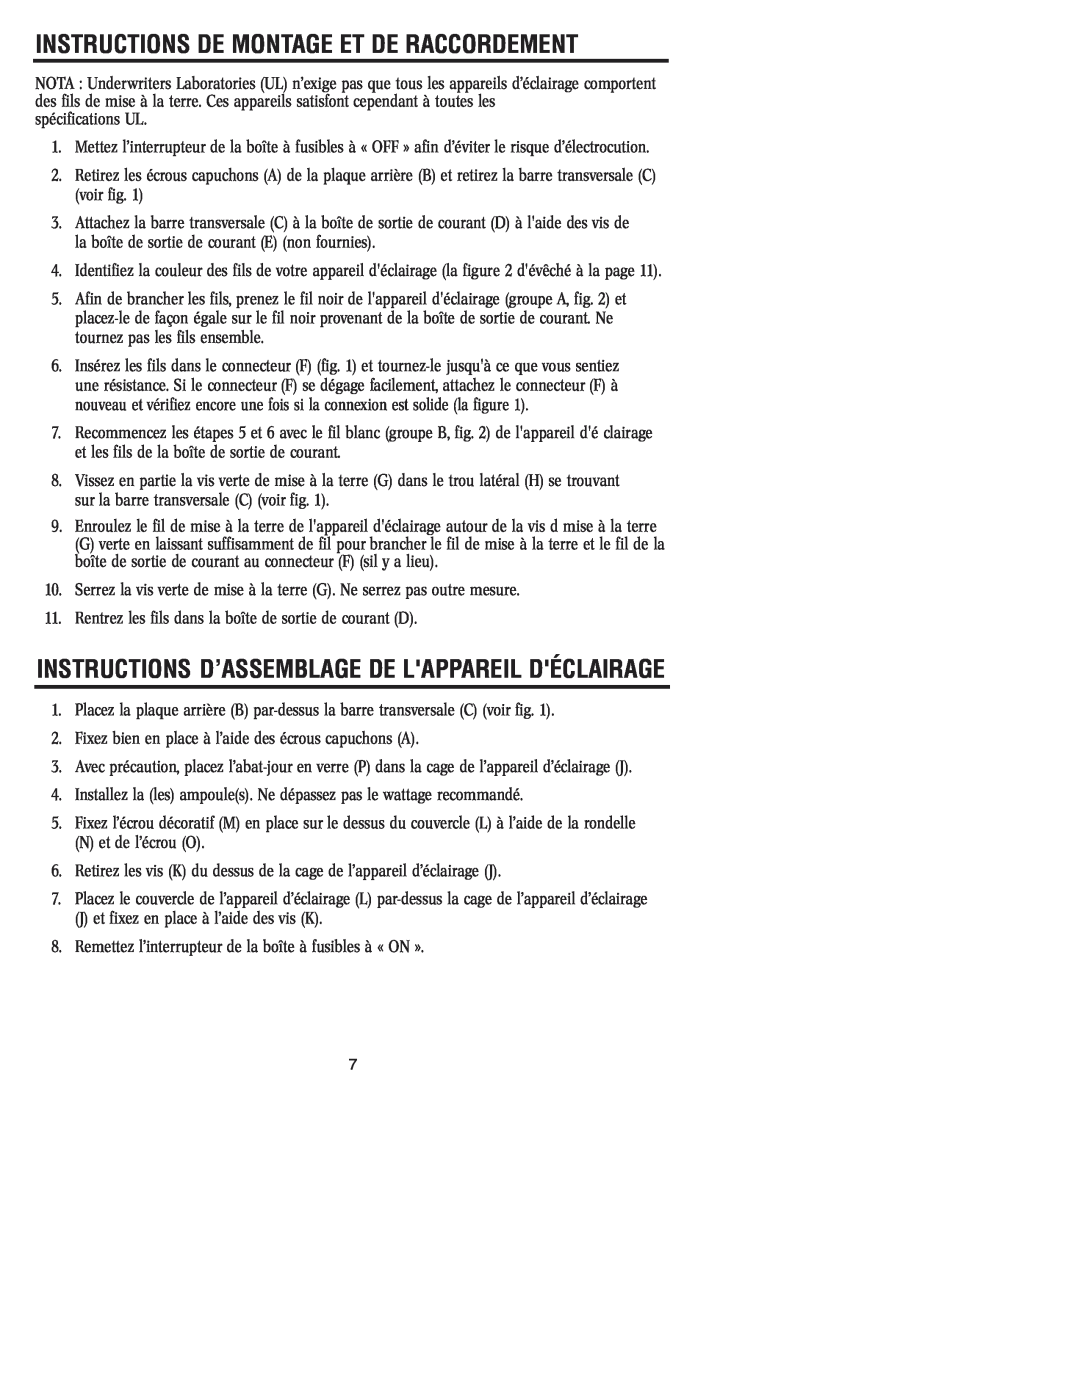 Westinghouse W-032 Instructions D’Assemblage De Lappareil Déclairage, Instructions De Montage Et De Raccordement 